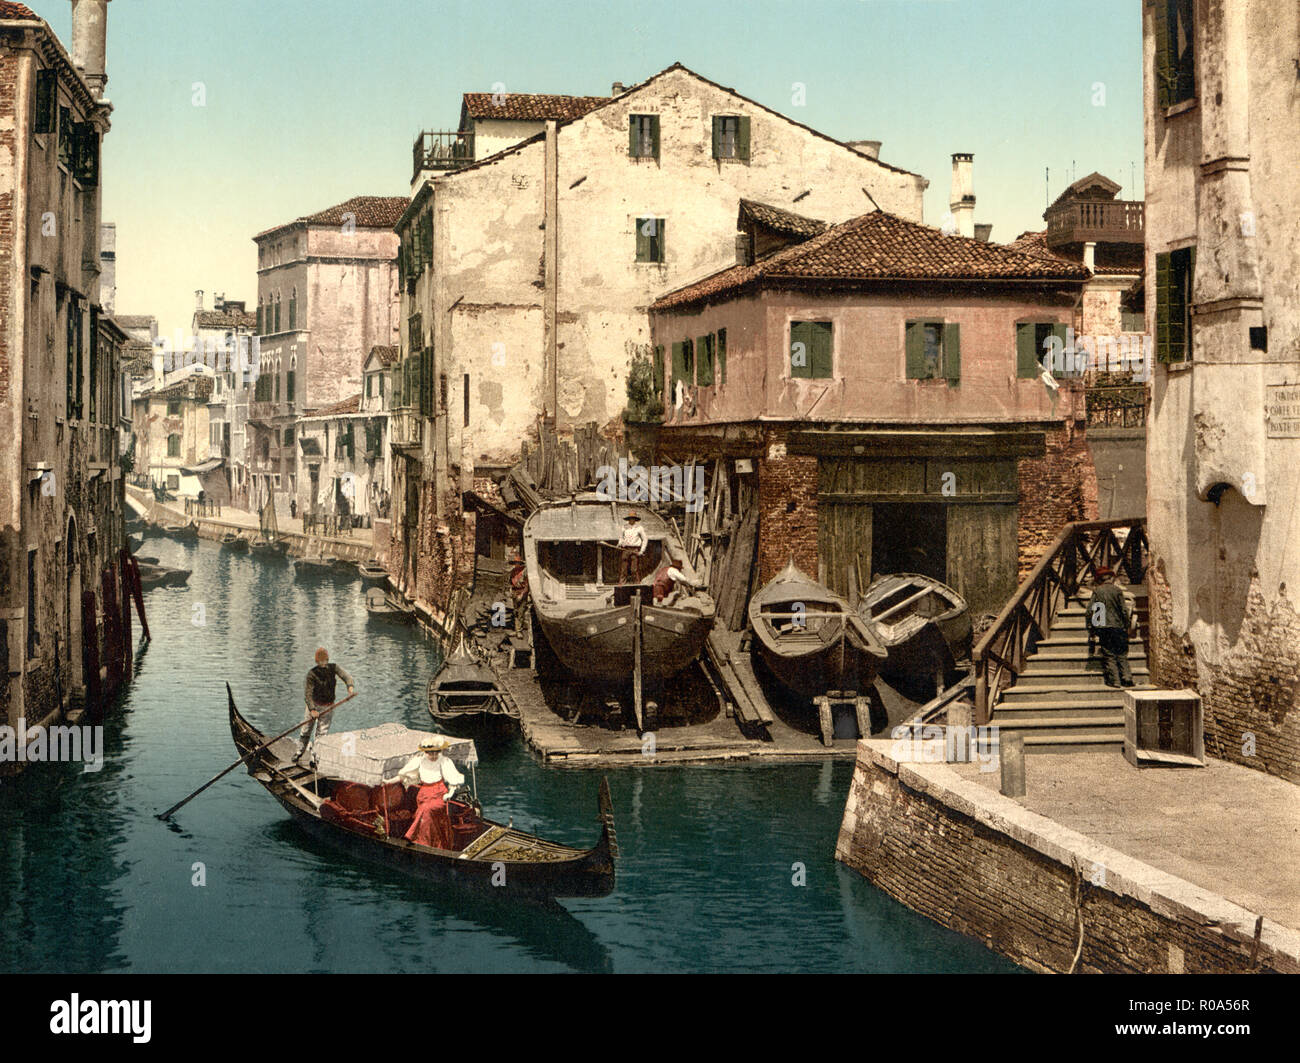 Le Rio della Botisella, Venise, Italie, impression Photochrome, Detroit Publishing Company, 1900 Banque D'Images